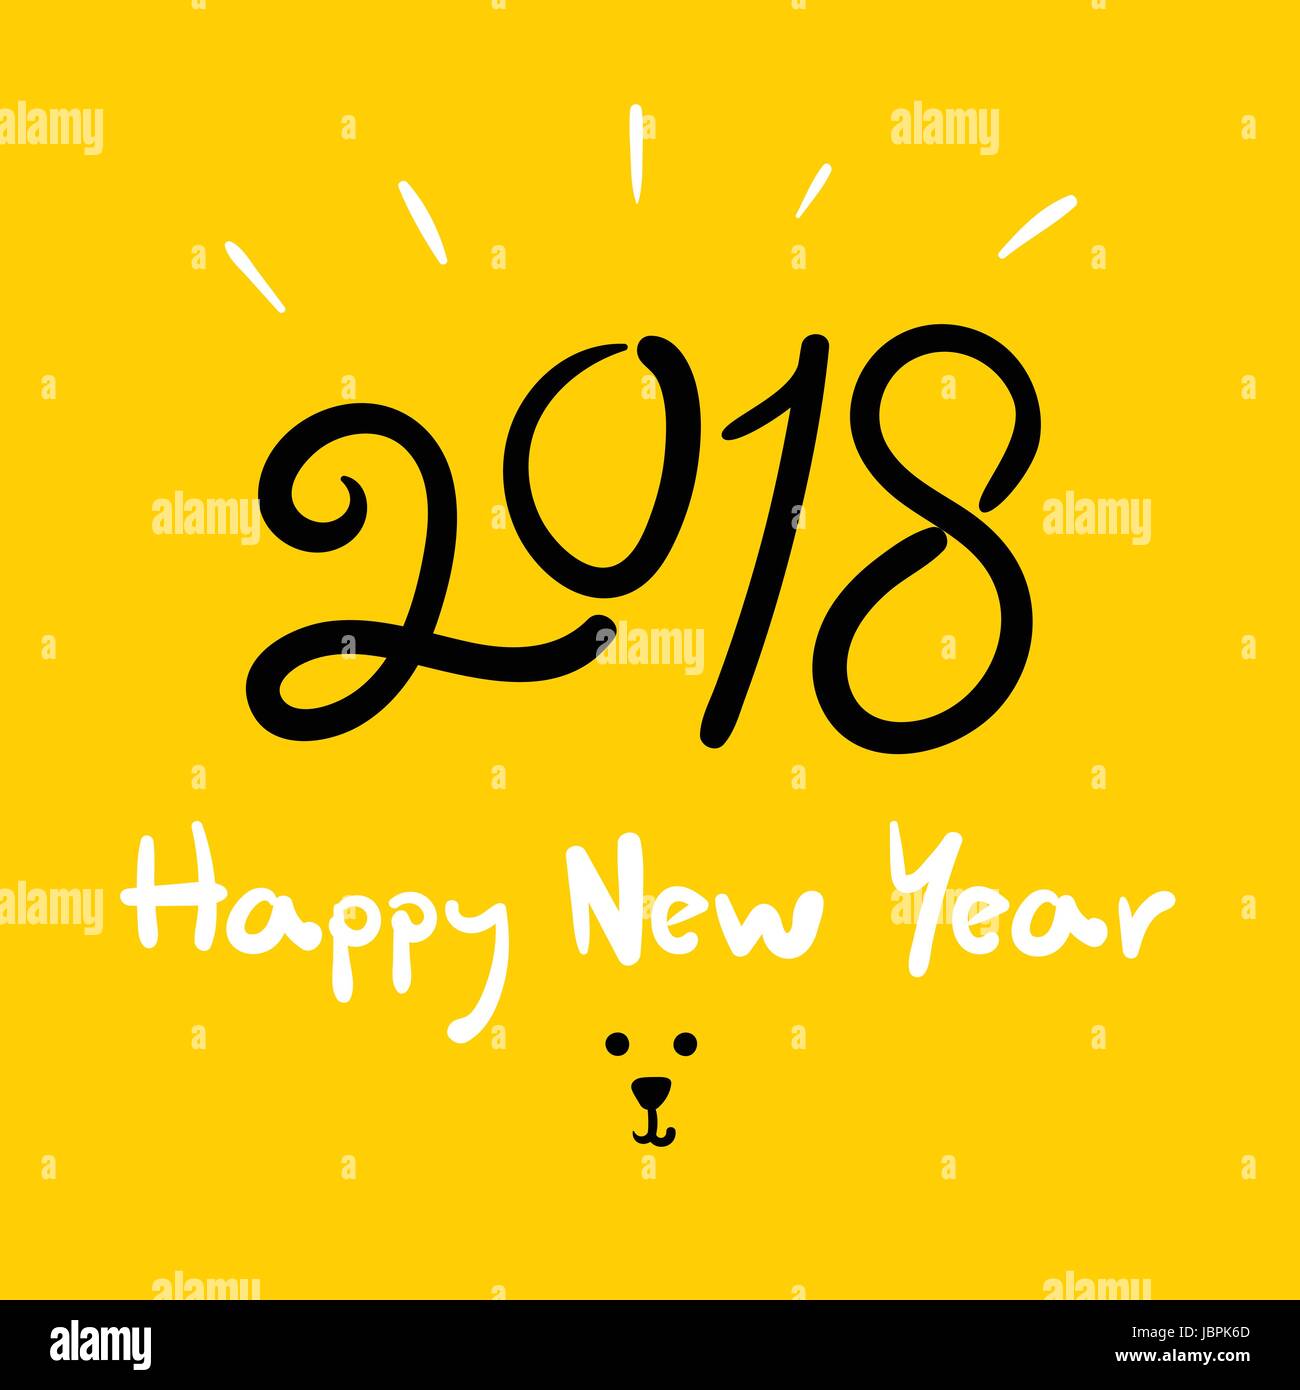 Frohes neues Jahr 2018 (Hund Jahr) Doodle Handschrift Pinsel auf hellen gelben Hintergrund, Urlaub-Grußkarte. Stock Vektor